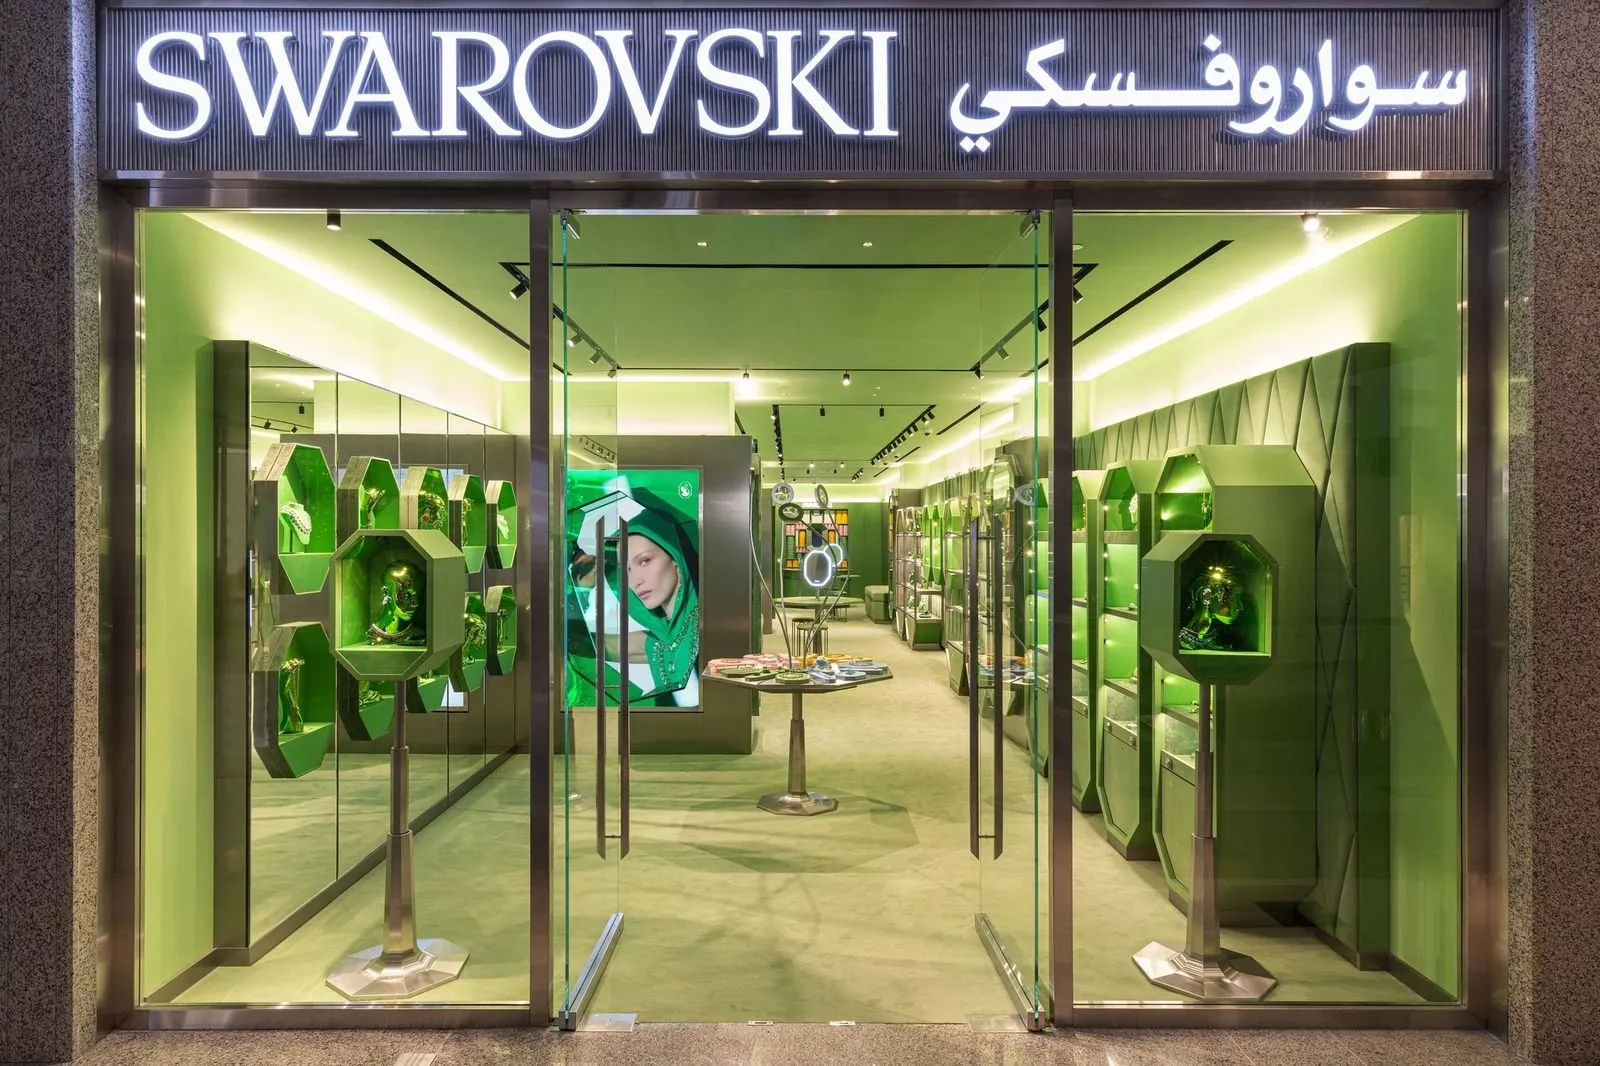 سواروفسكي تفتح أبواب متجرها بمفهوم New Retail Landscape الجديد في السعودية